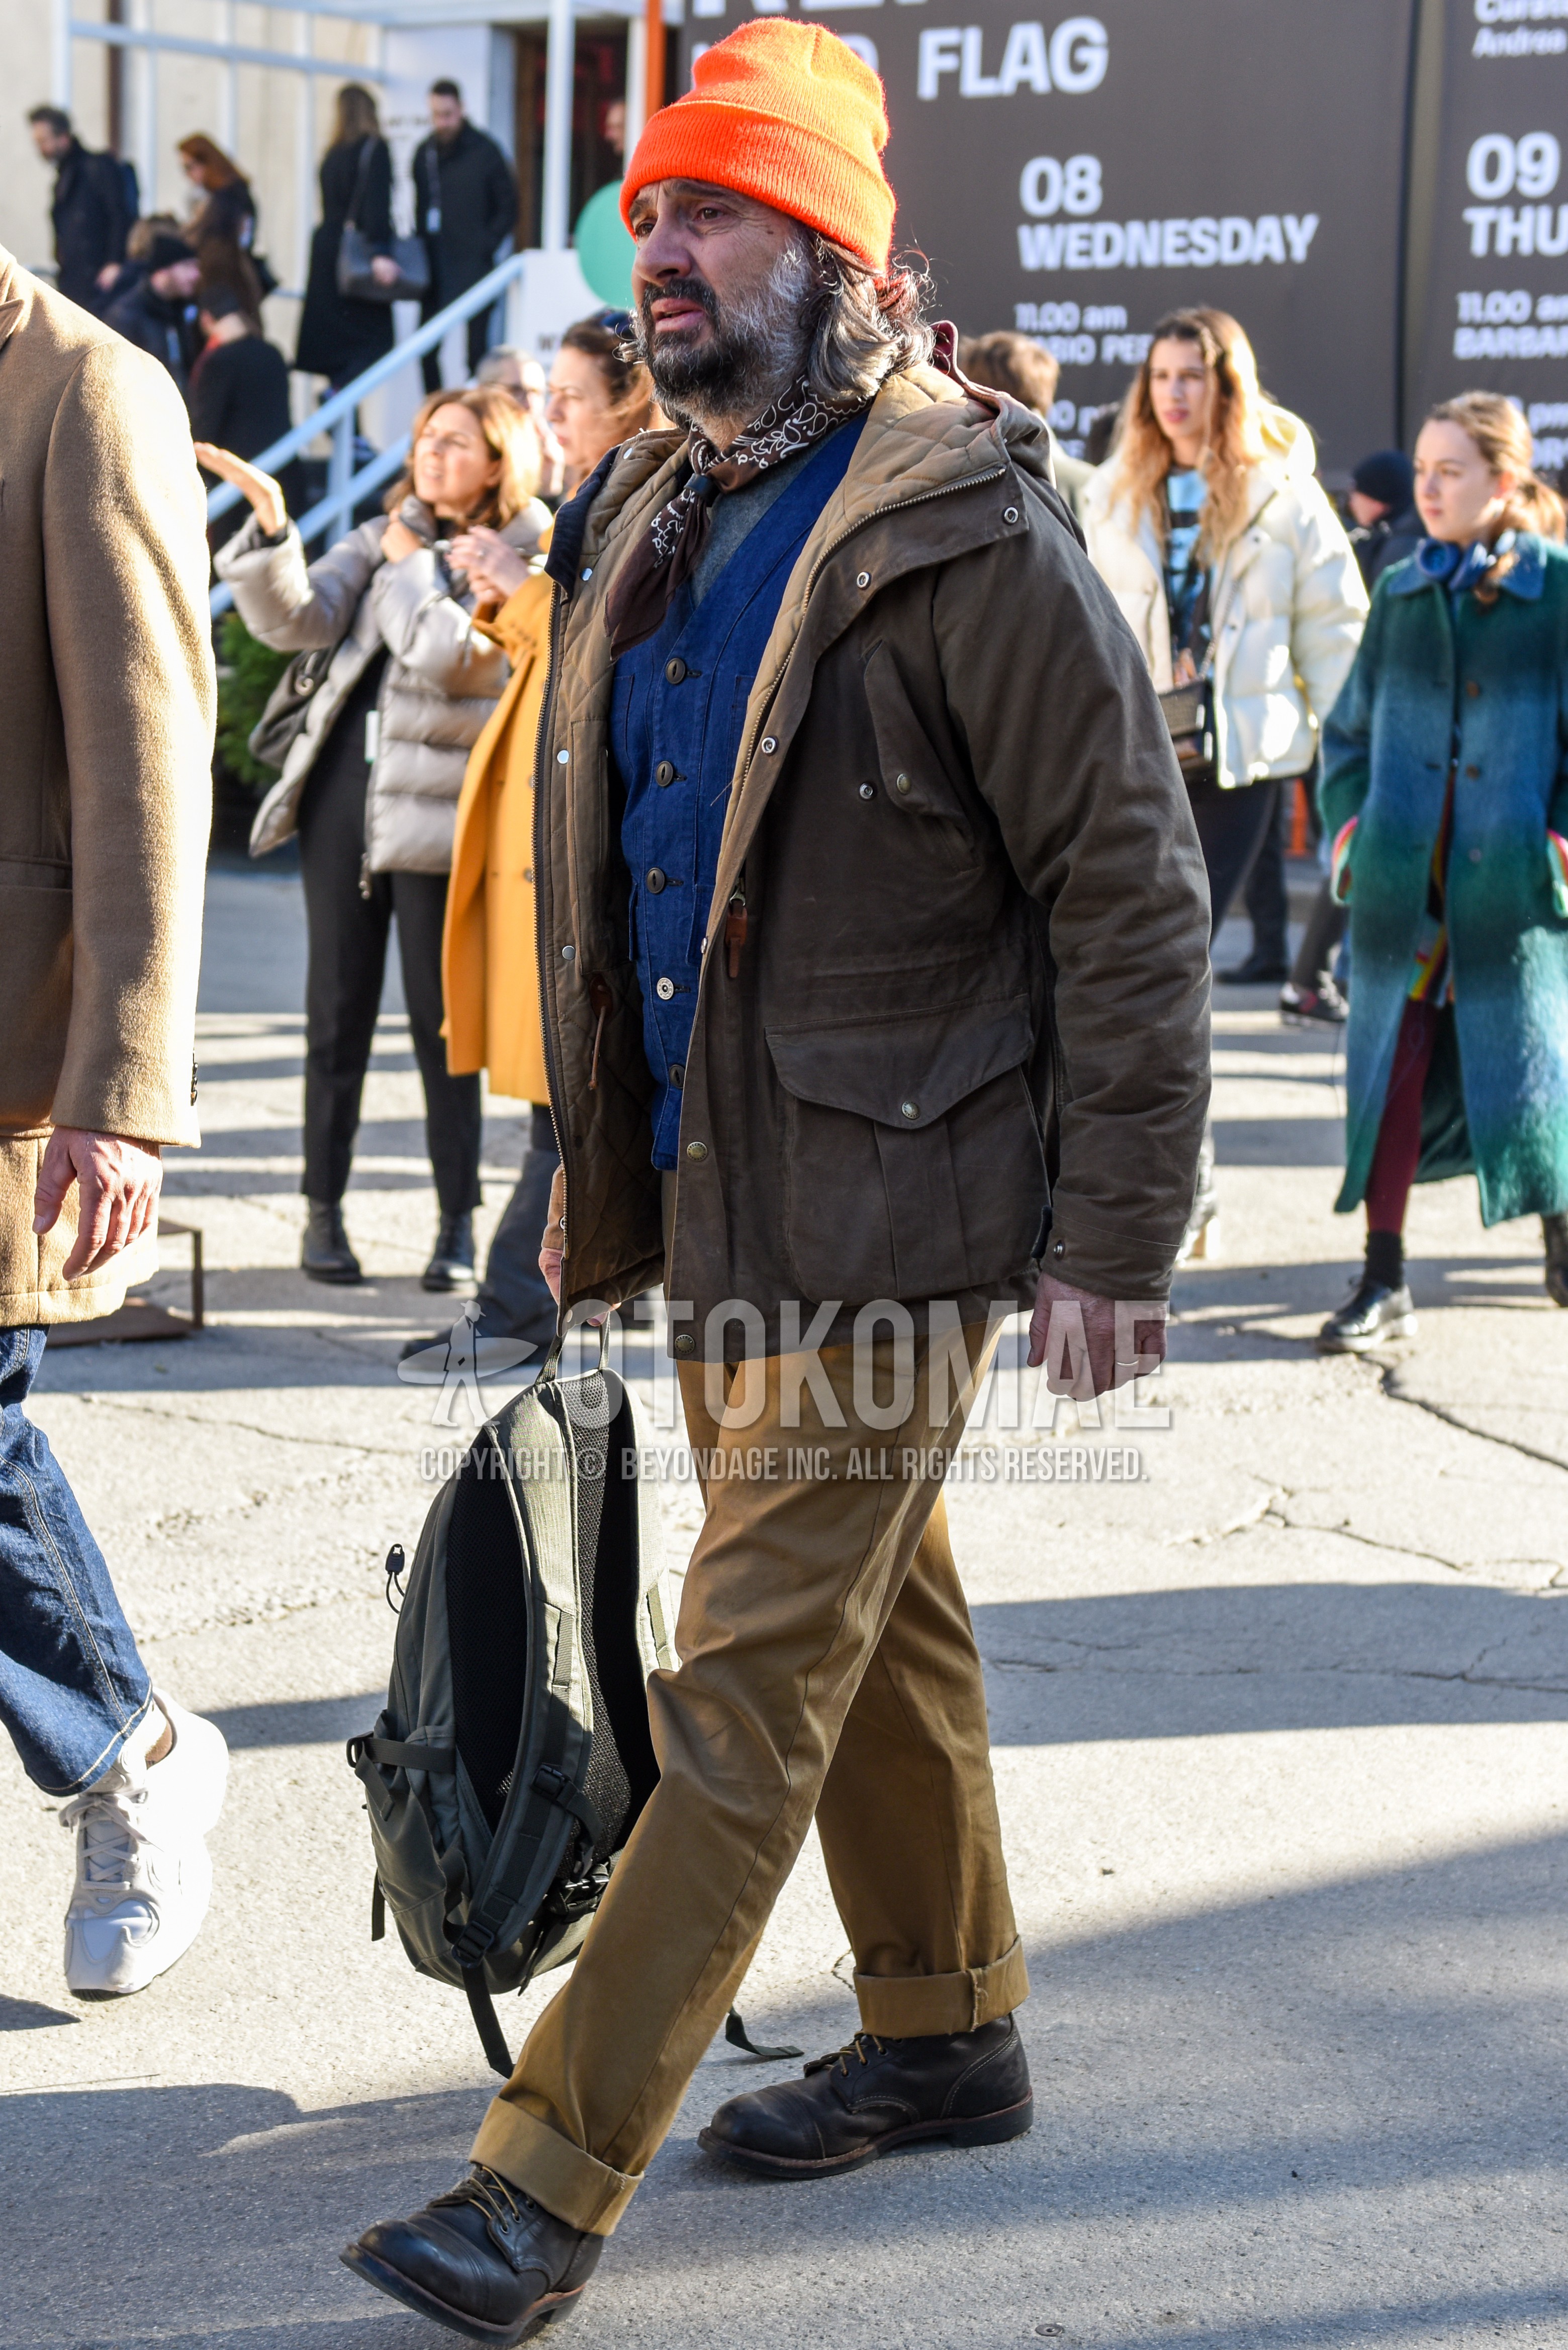 Men's autumn winter outfit with orange plain knit cap, brown paisley bandana/neckerchief, beige plain hooded coat, gray plain t-shirt, blue plain gilet, beige plain chinos, brown  boots, gray plain backpack.